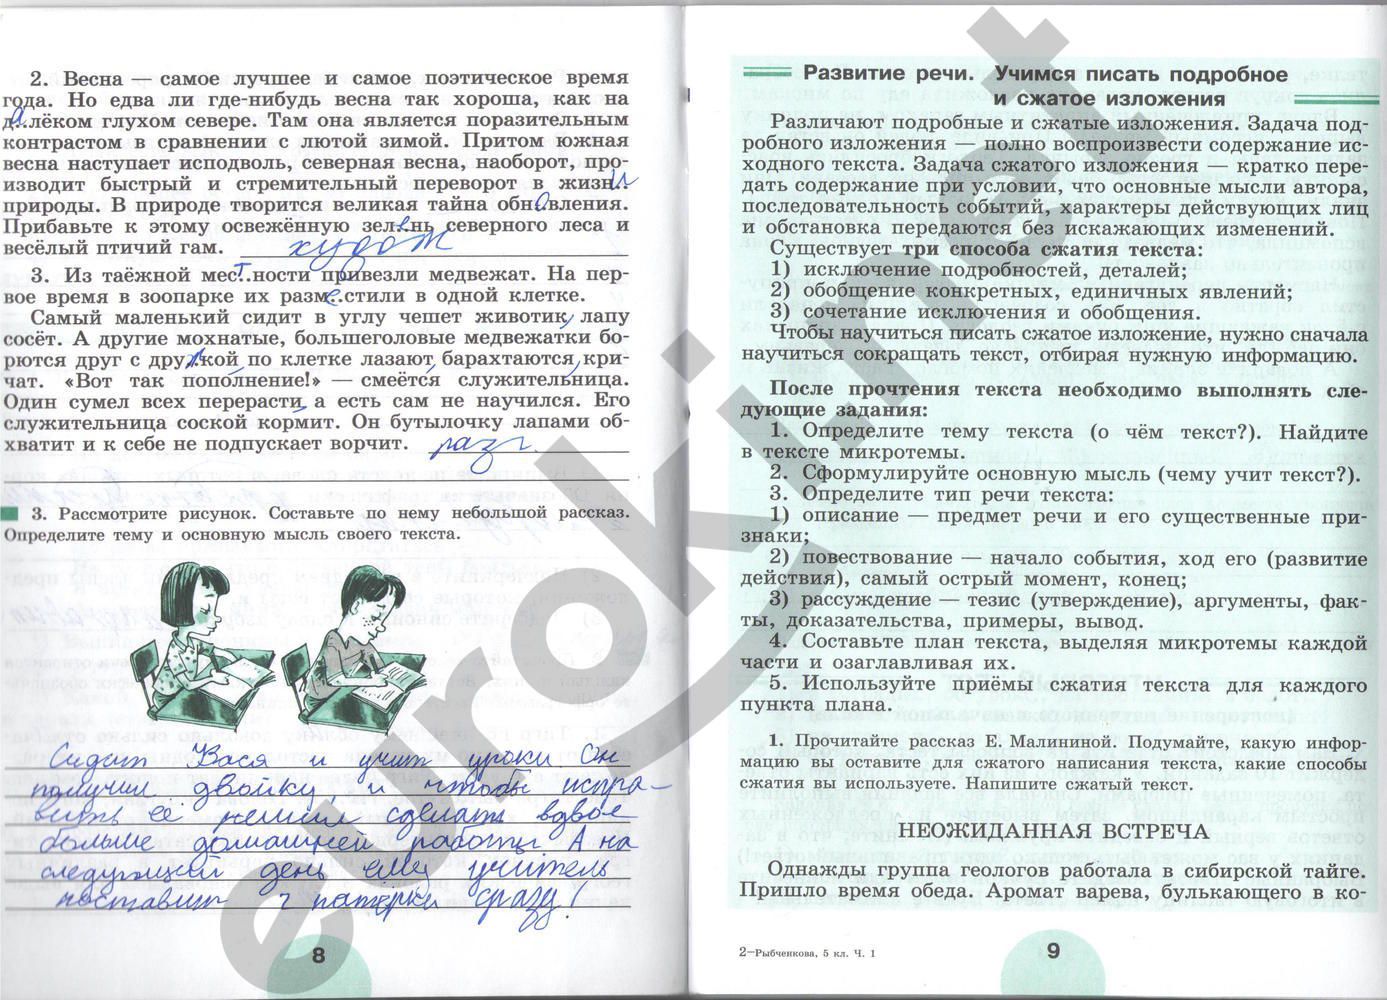 ГДЗ Русский язык 5 класс - стр. 8-9